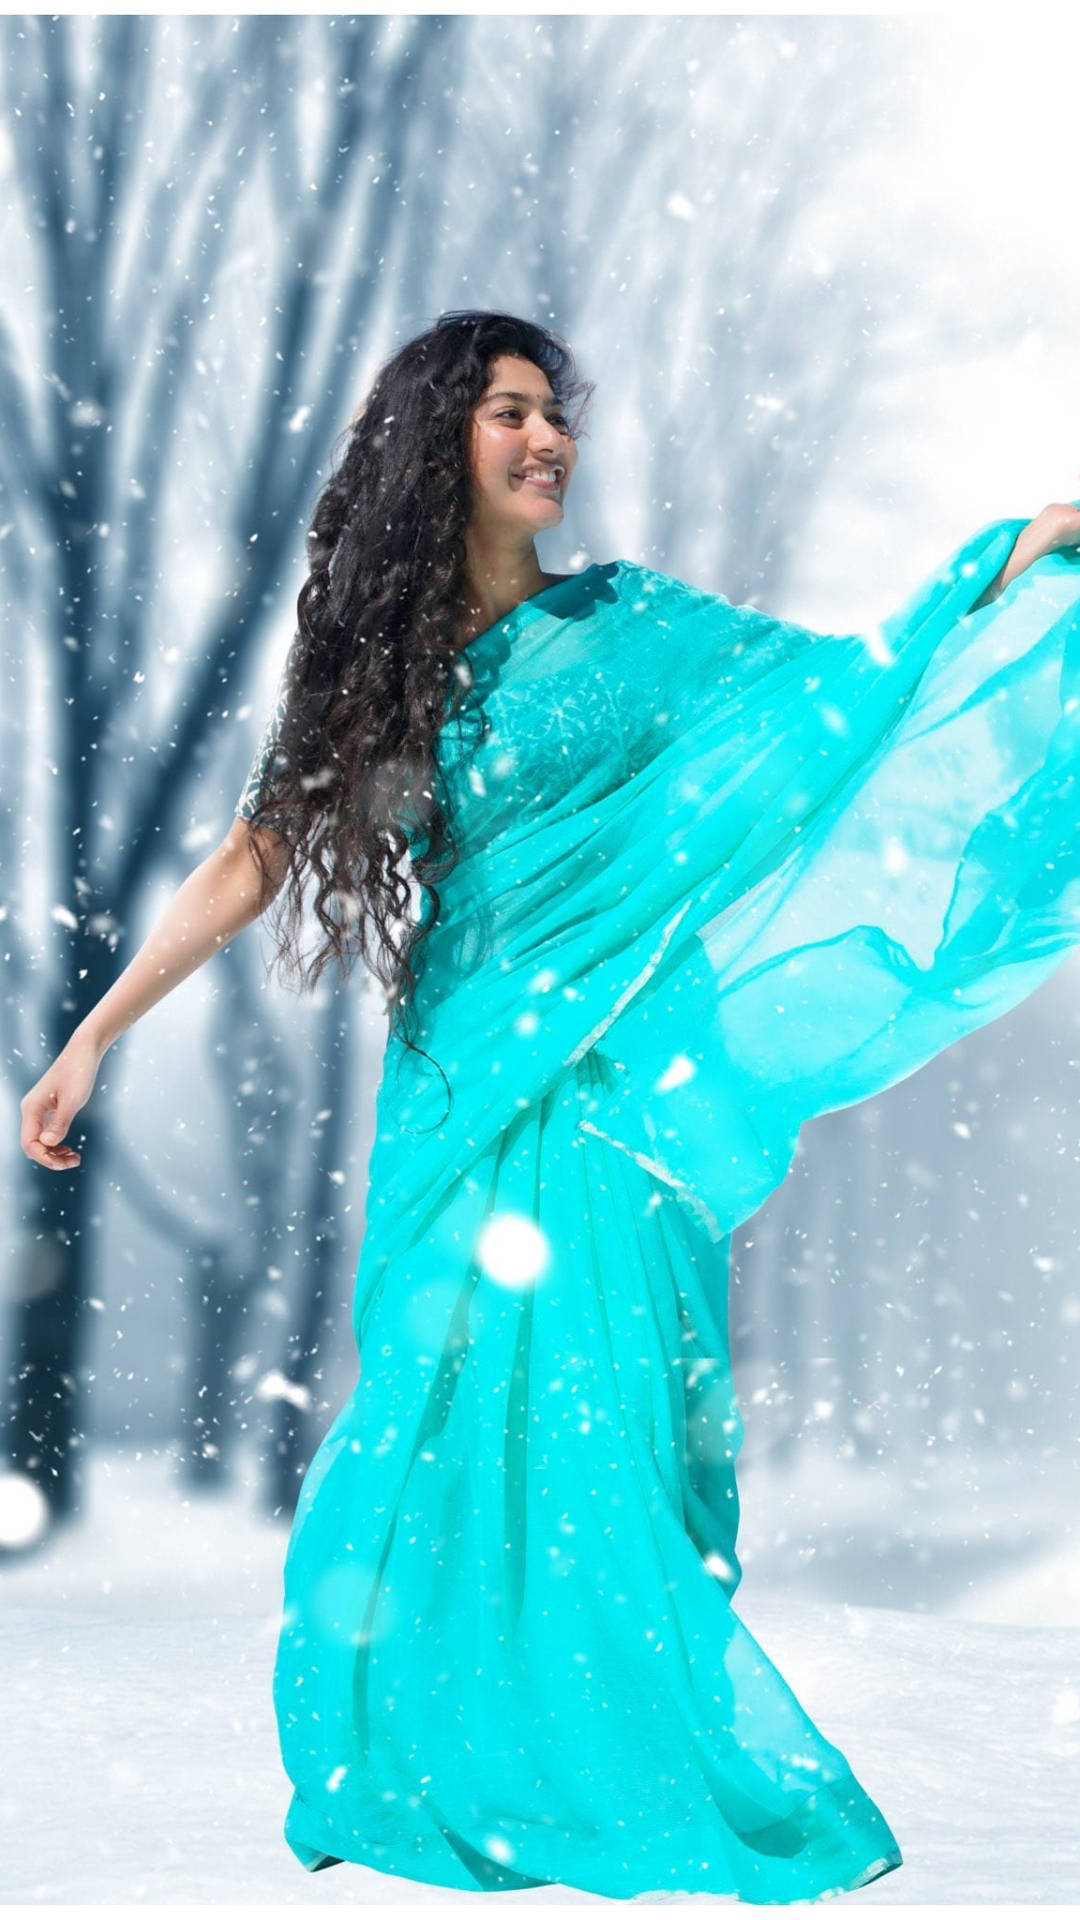 Sai Pallavi Dancing In Snow Wallpaper